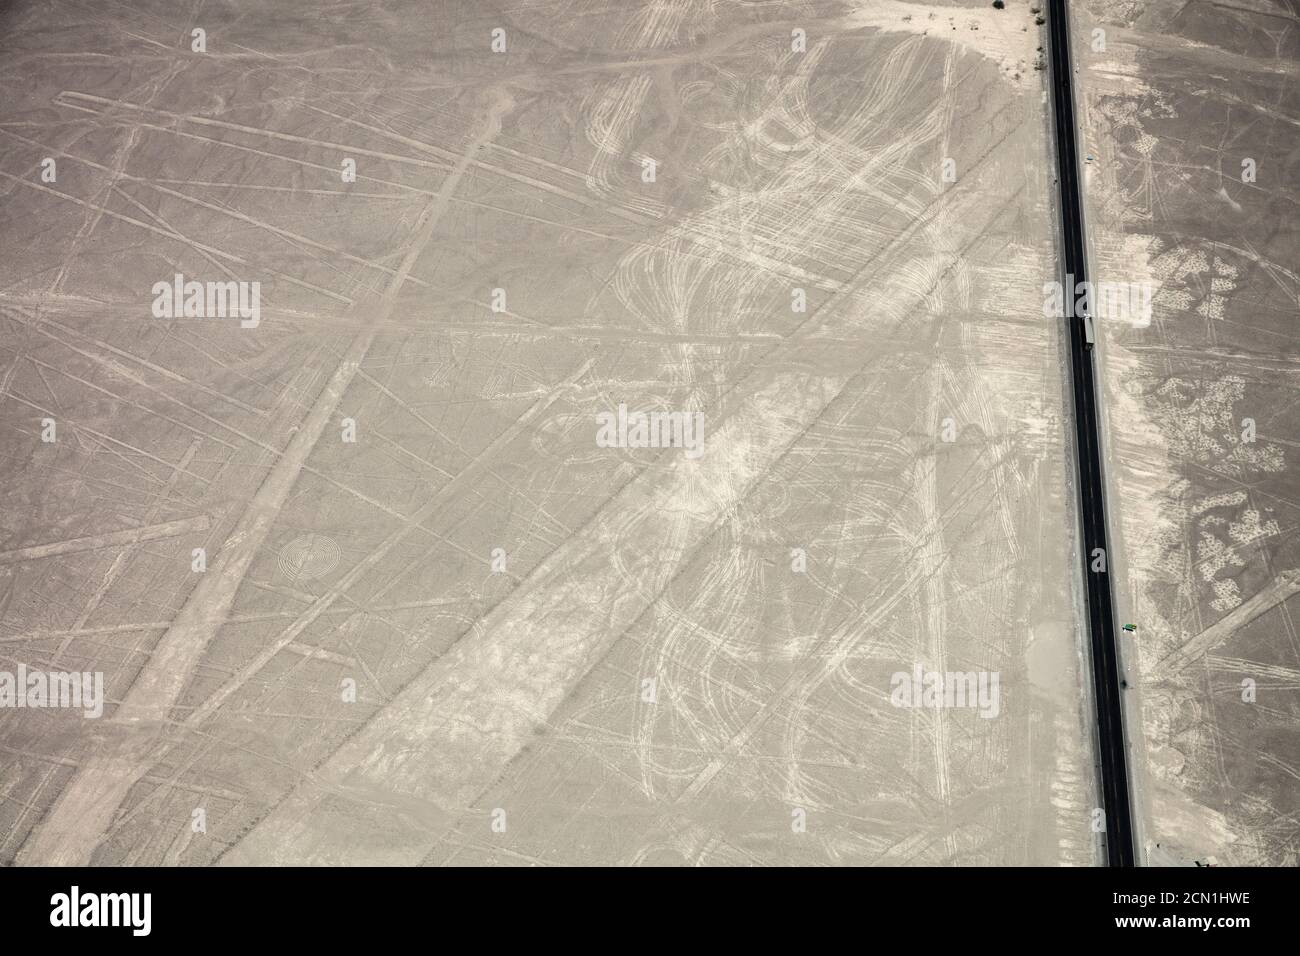 Die panamerikanische oder interamerikanische Autobahn durchschneidet die Nazca-Linien In der Wüste des südlichen Peru Stockfoto